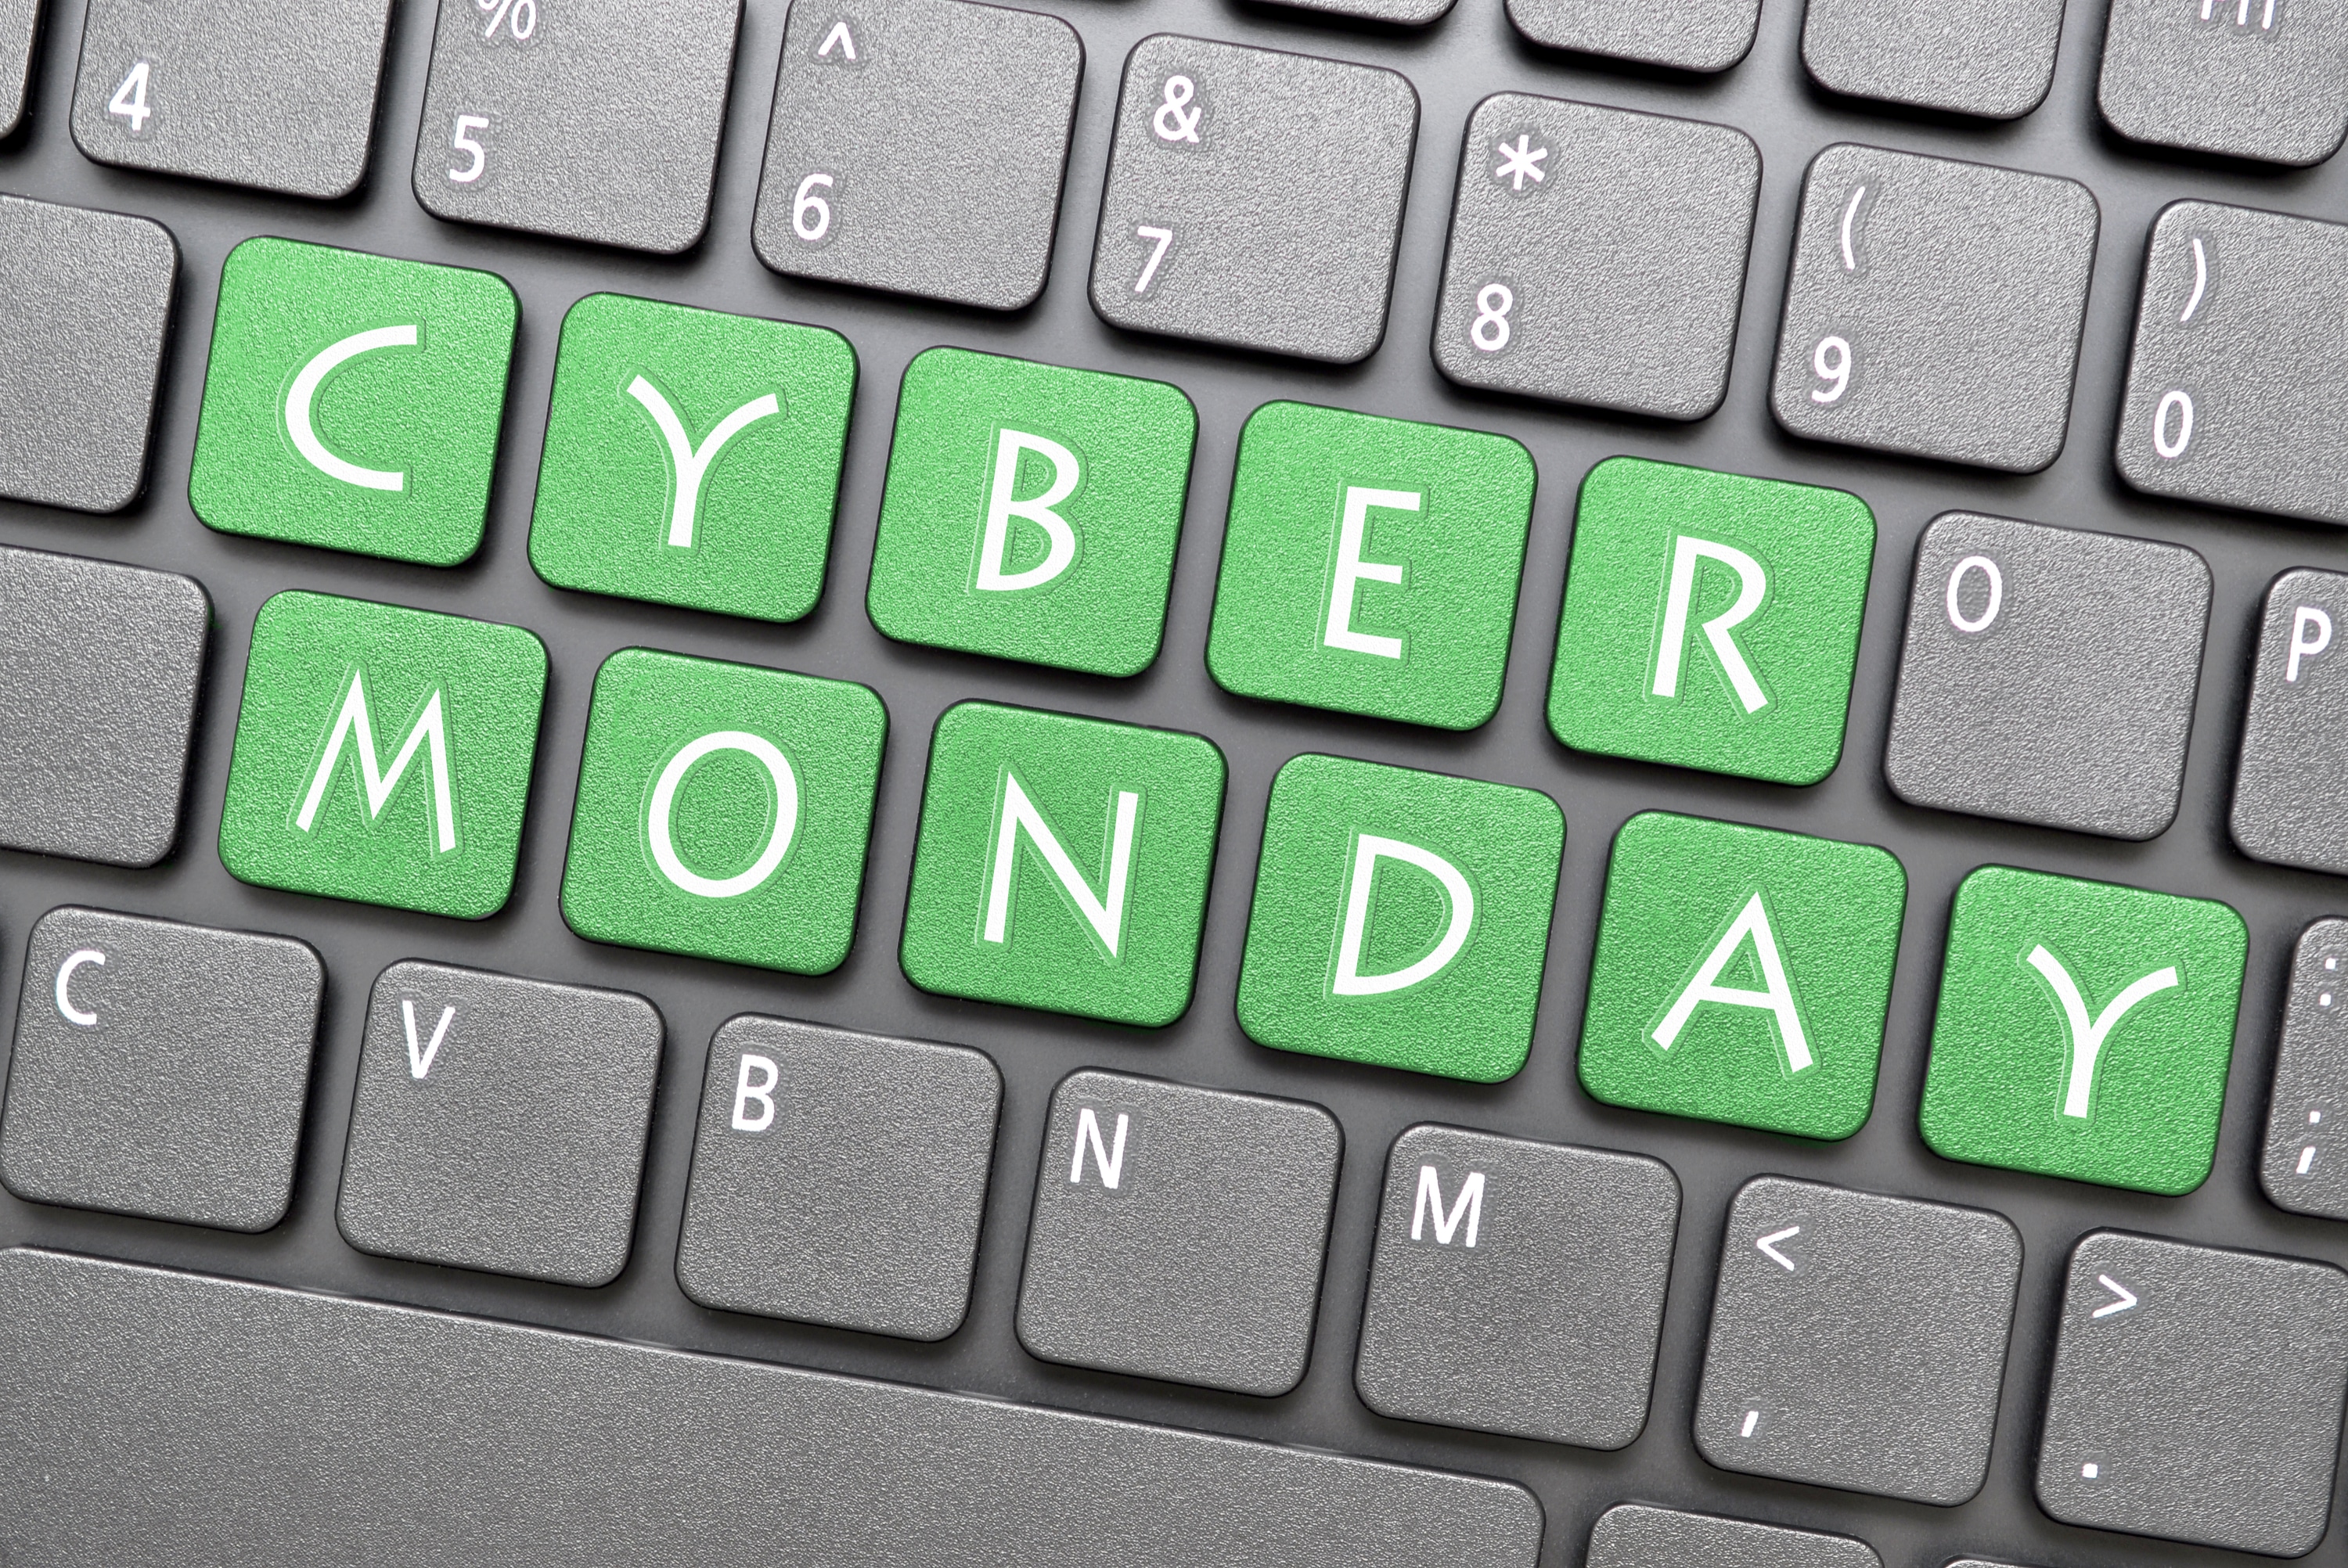 Cyber Monday nedir, nasıl ortaya çıkmıştır? 2022 Siber Pazartesi ne zaman?